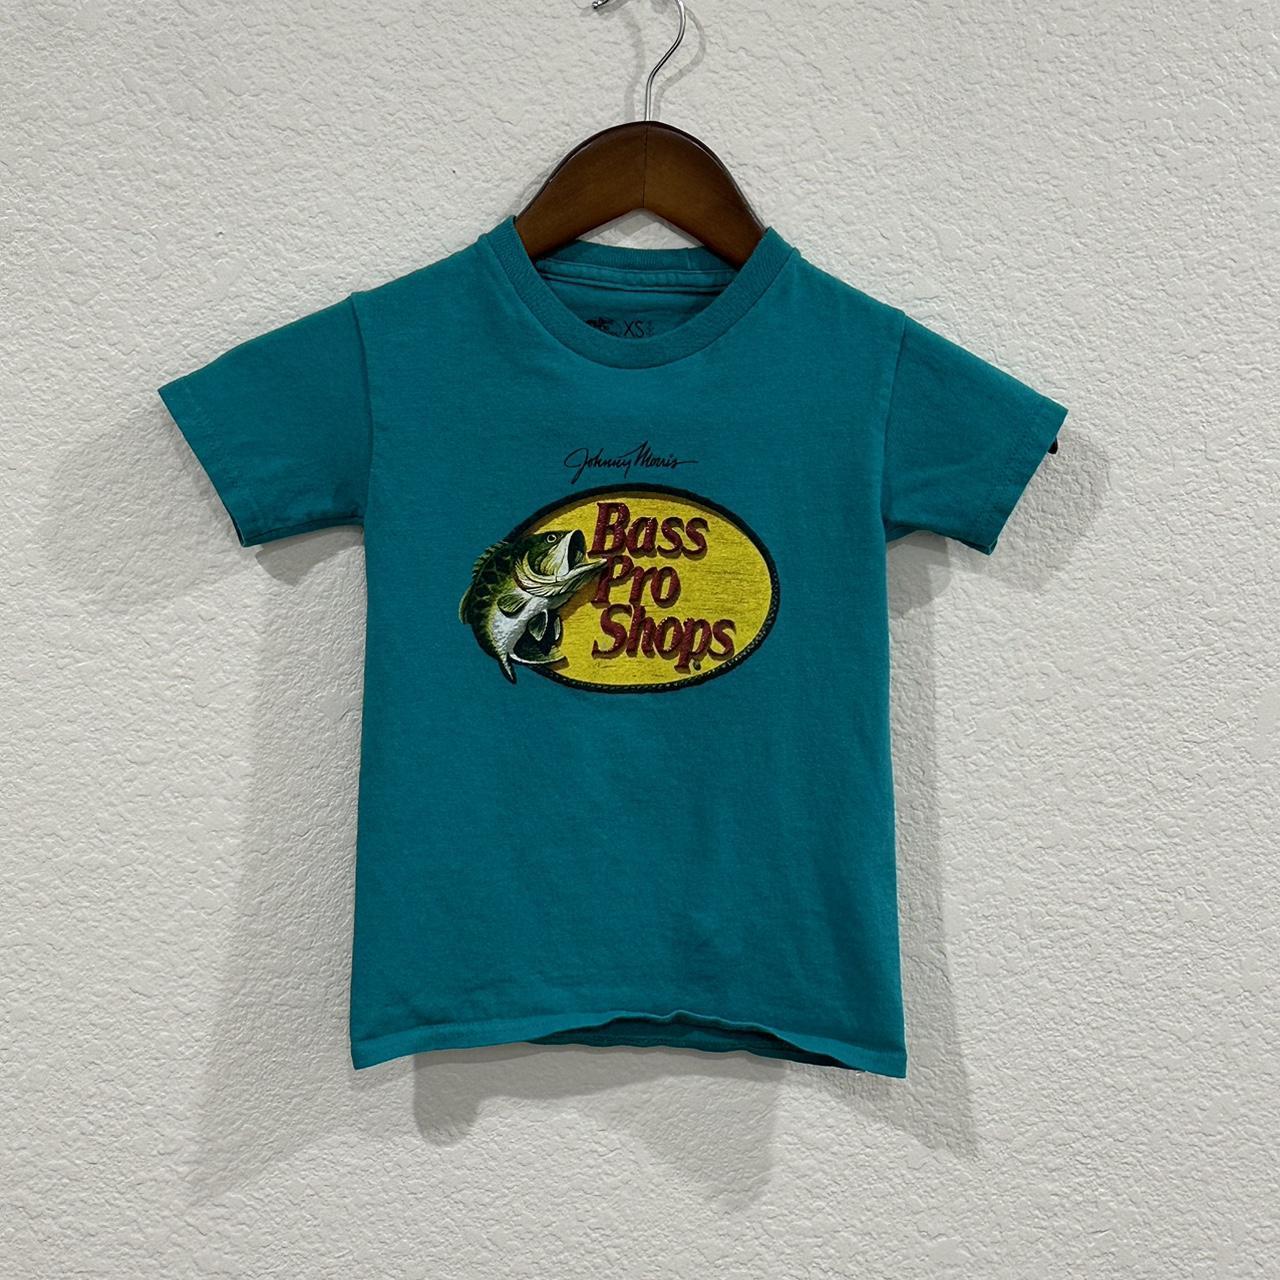 Bass Pro Fishing Shop Shirt Youth XS Teal Short - Depop